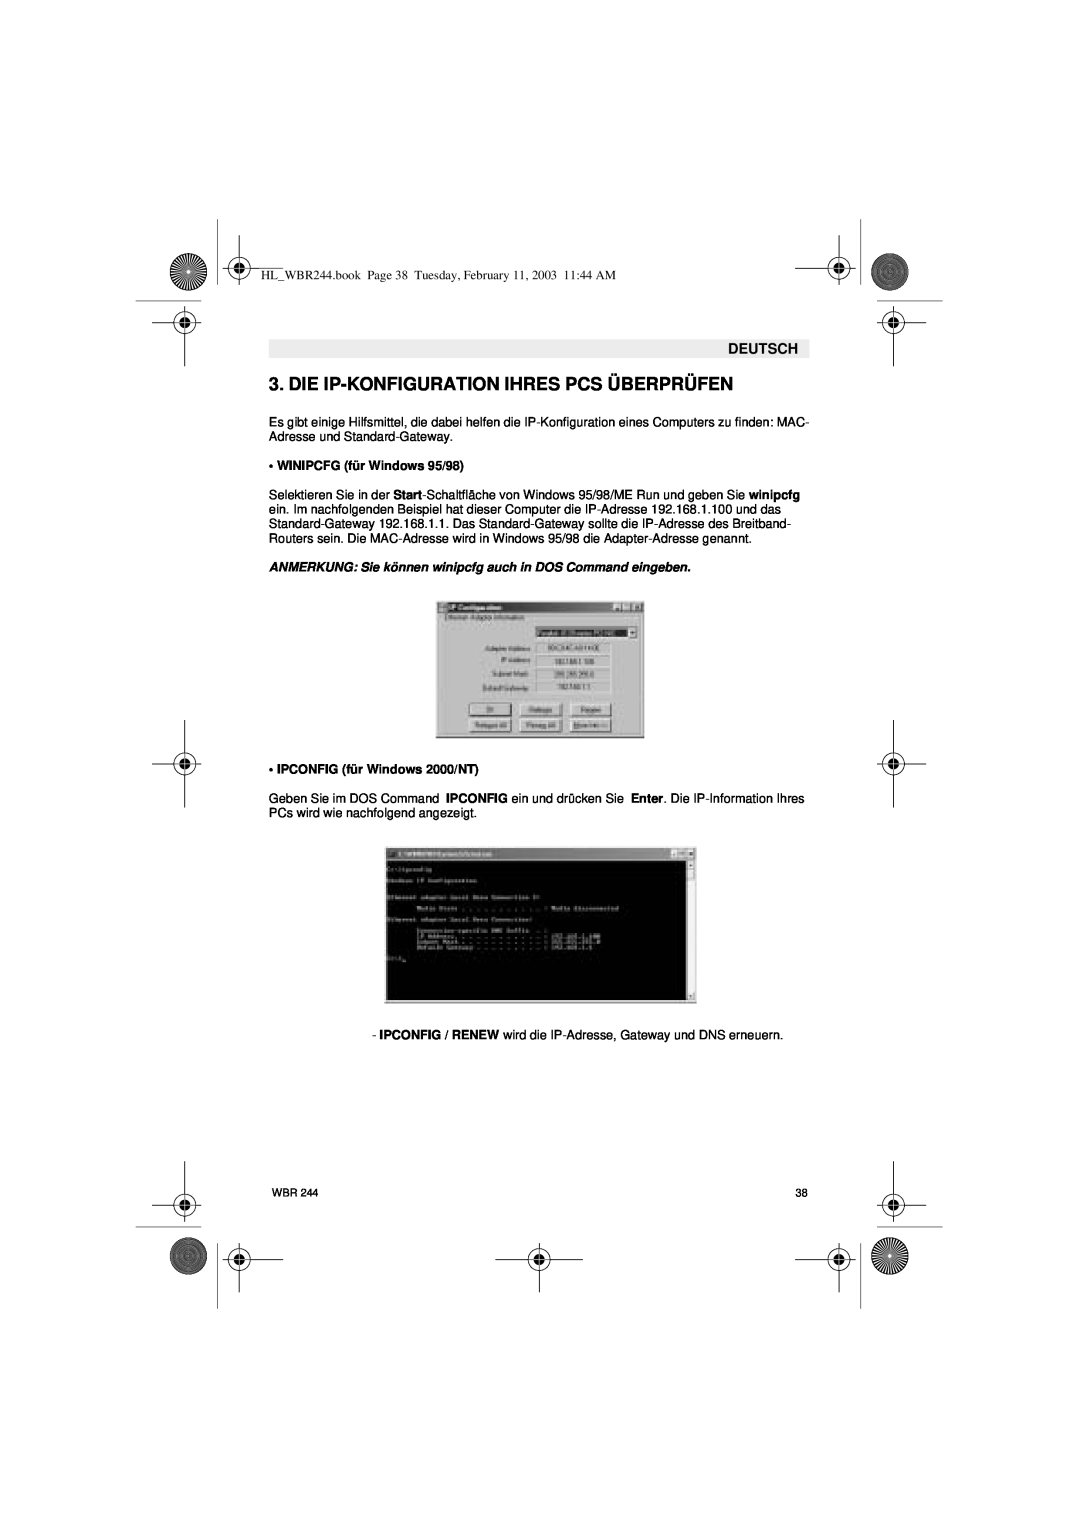 Topcom WBR 244 manual Die Ip-Konfiguration Ihres Pcs Überprüfen, WINIPCFG für Windows 95/98, IPCONFIG für Windows 2000/NT 